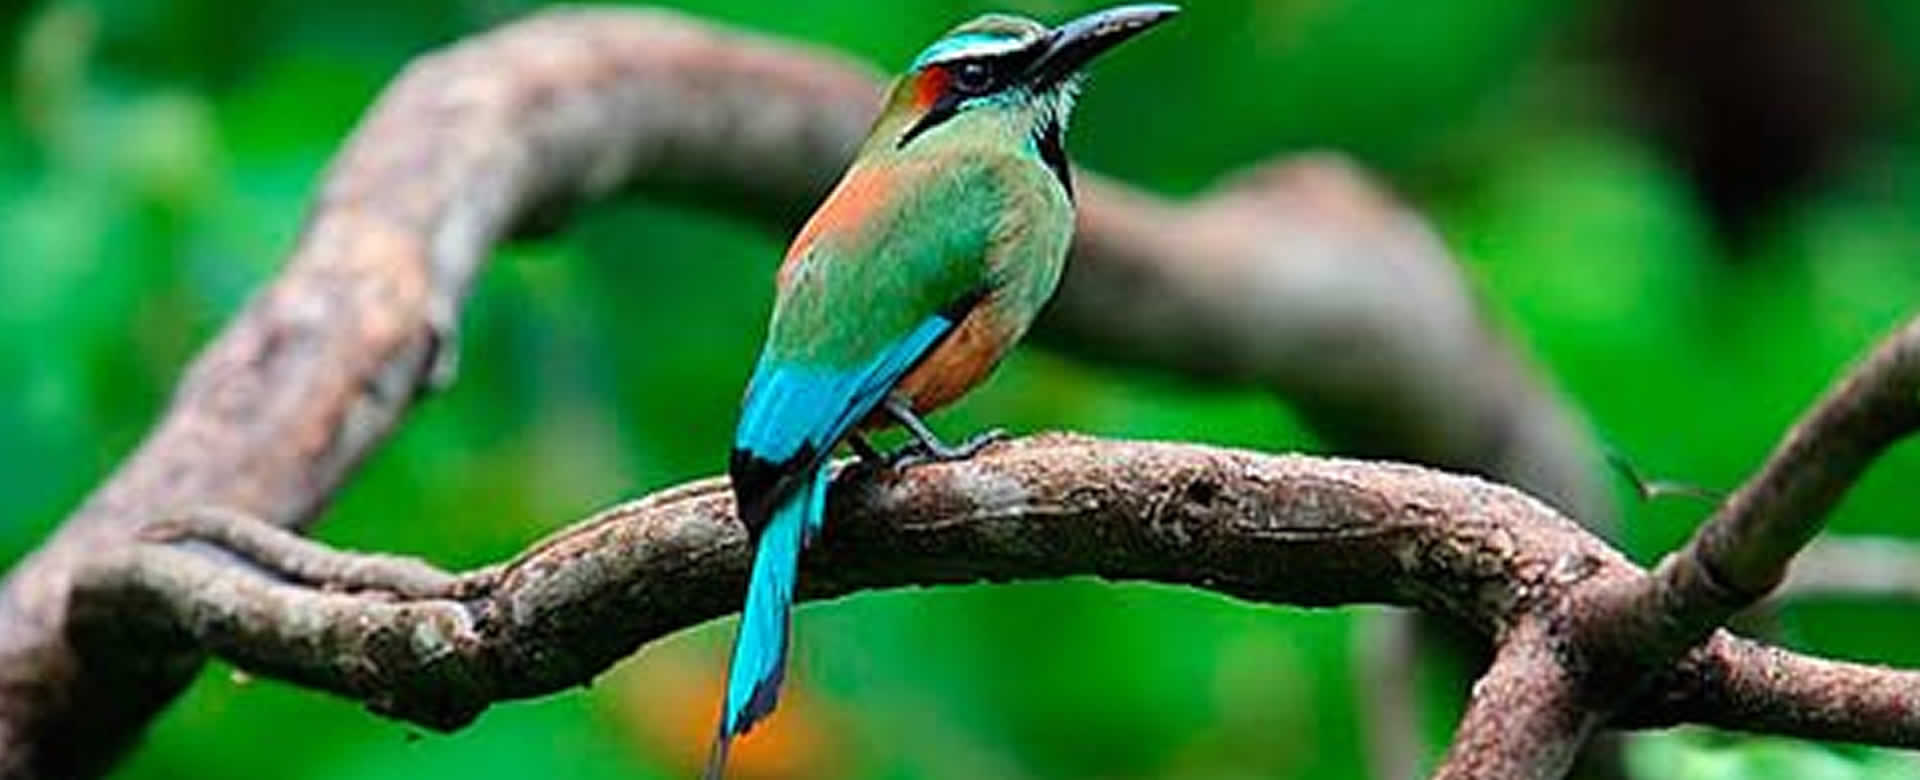 Guardabarranco es una bella ave colorida